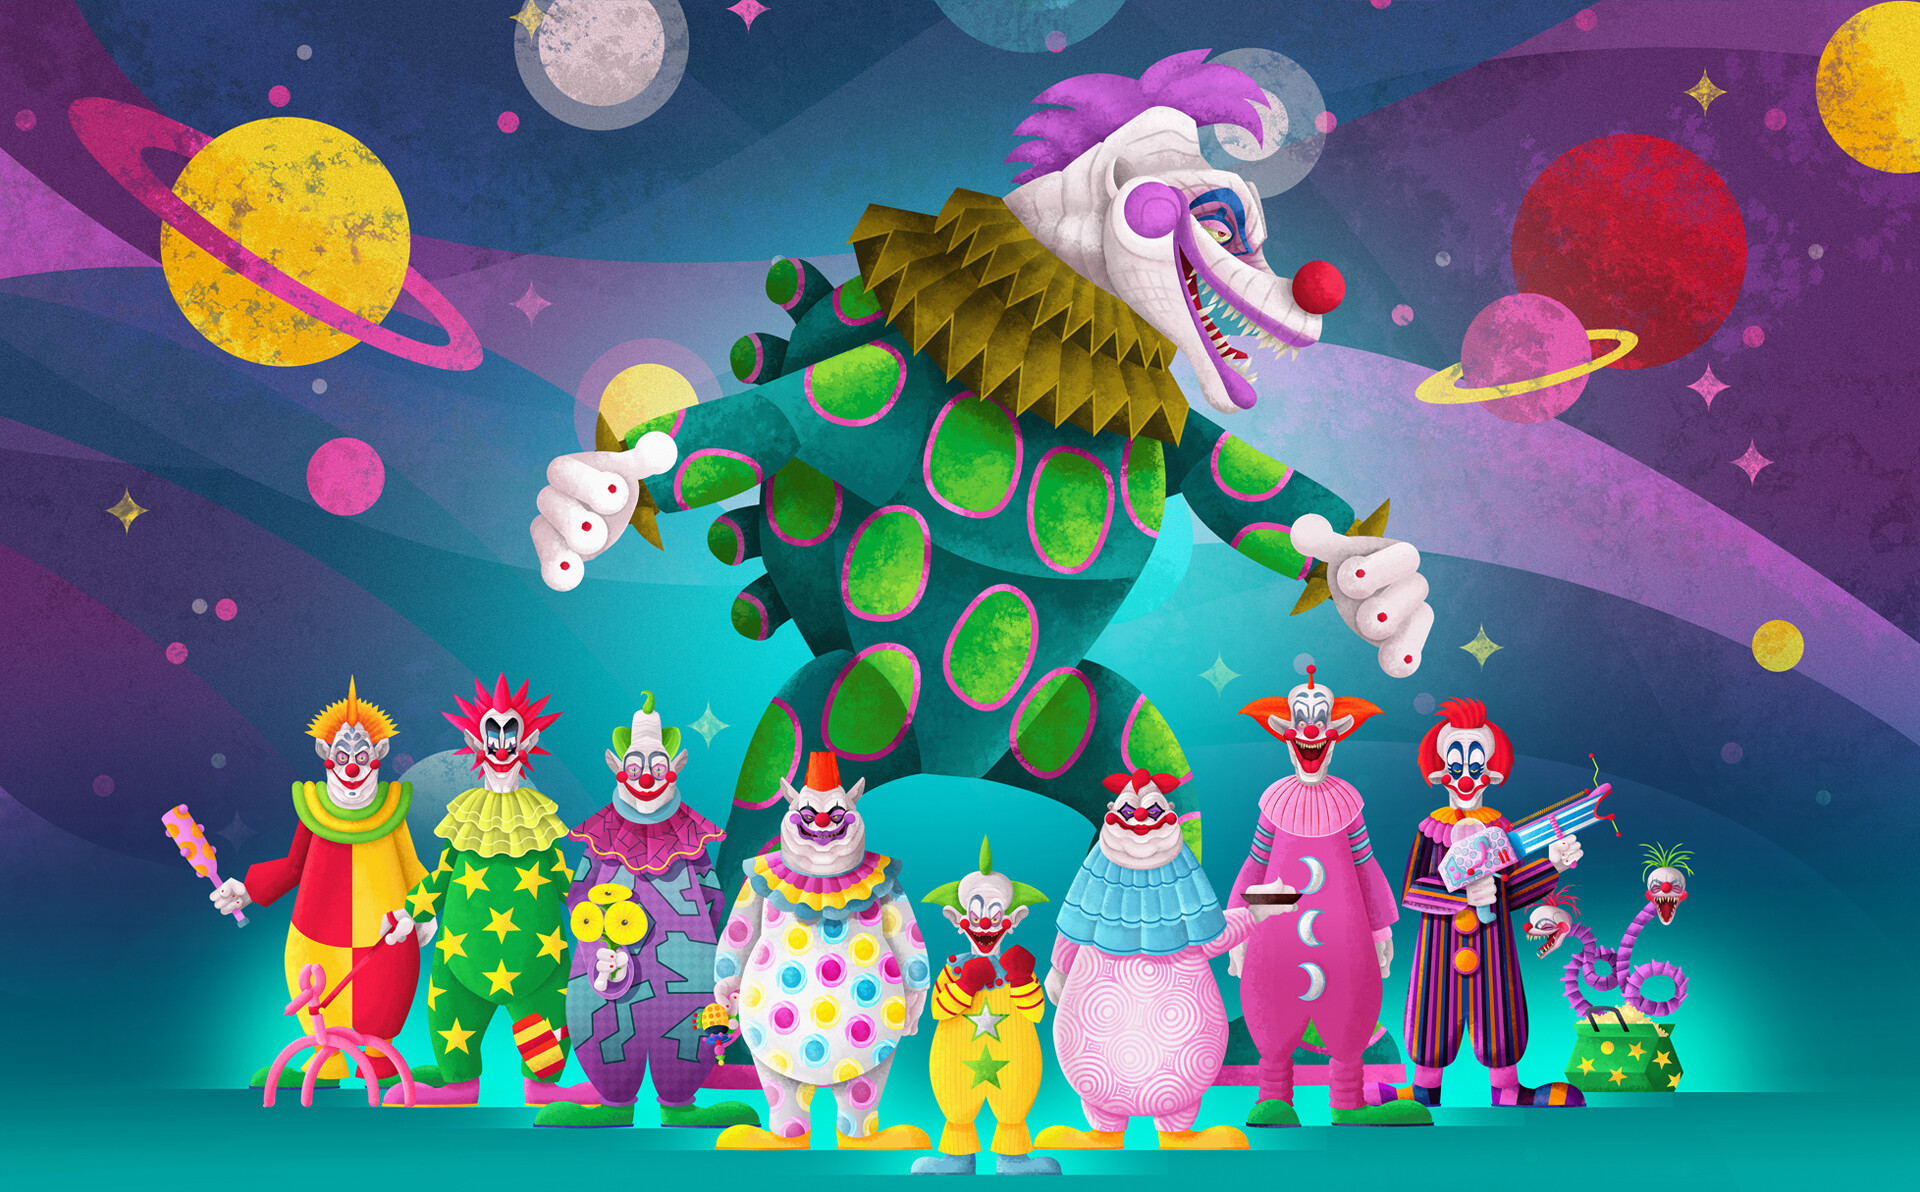 Killer klowns from outer. Killer Klowns from Outer Space. Killer Klowns from Outer Space Klownzilla.